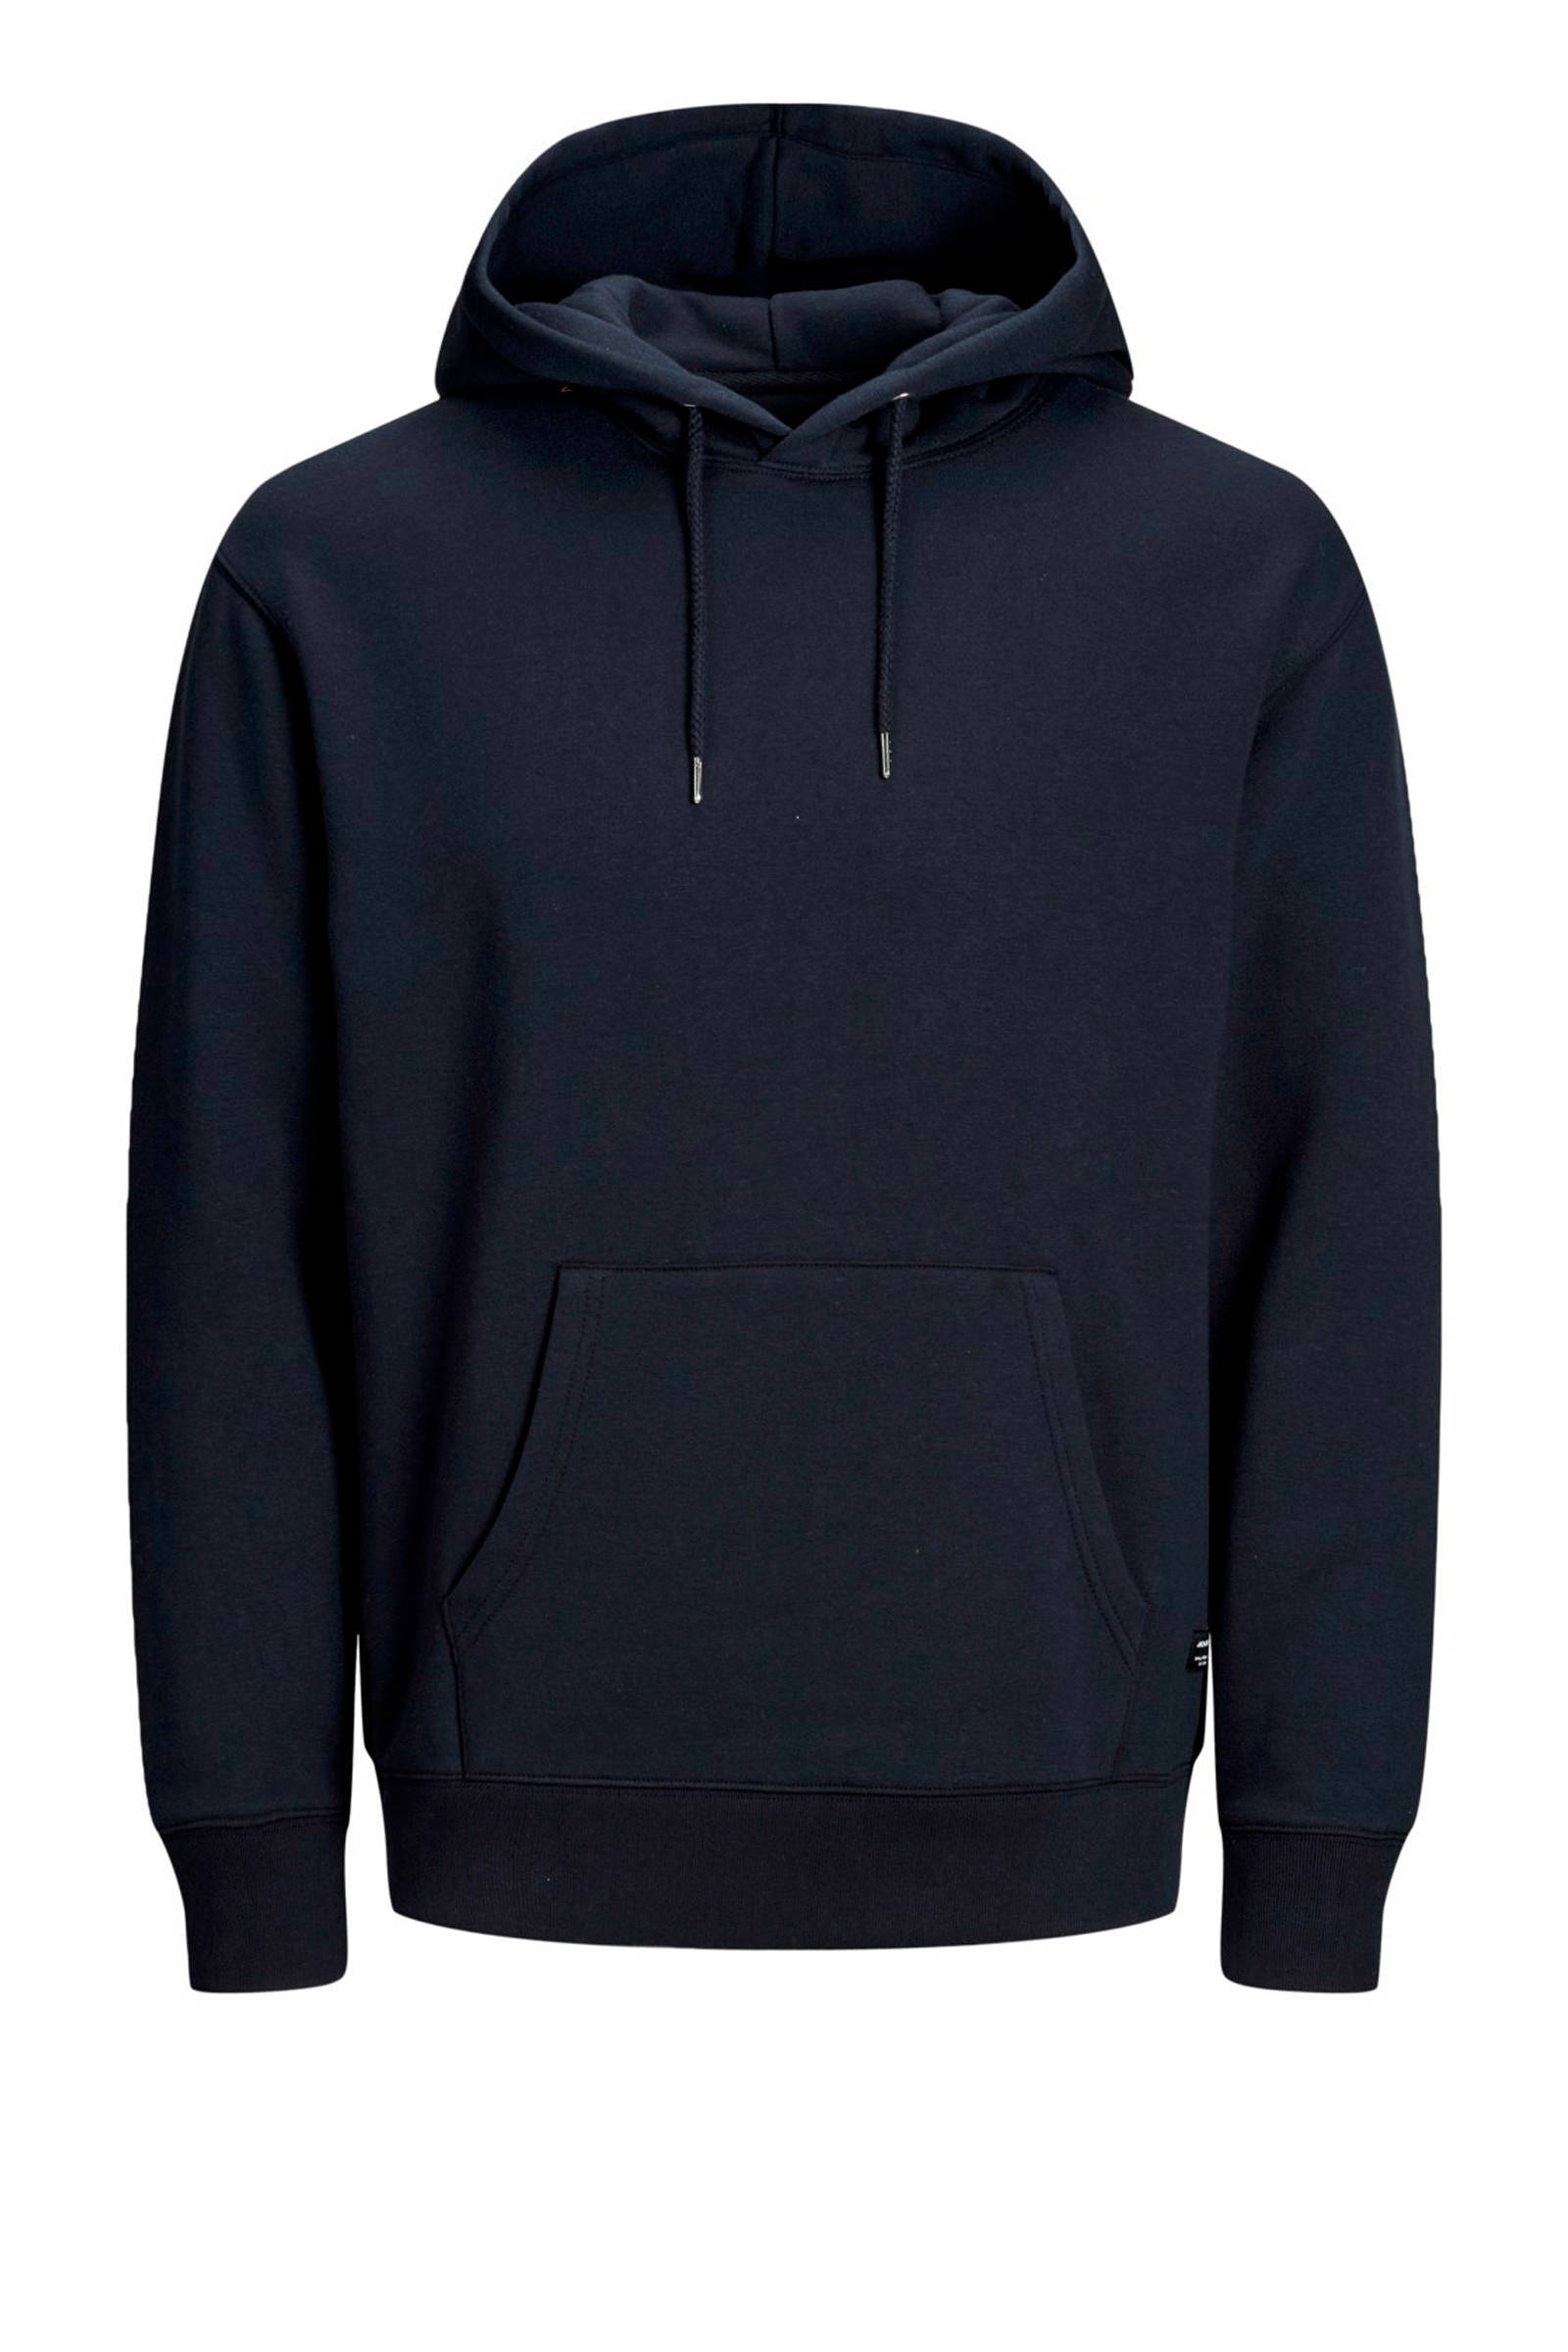 Jack & jones Groen Jjesoft Sweat Hood sweater online kopen